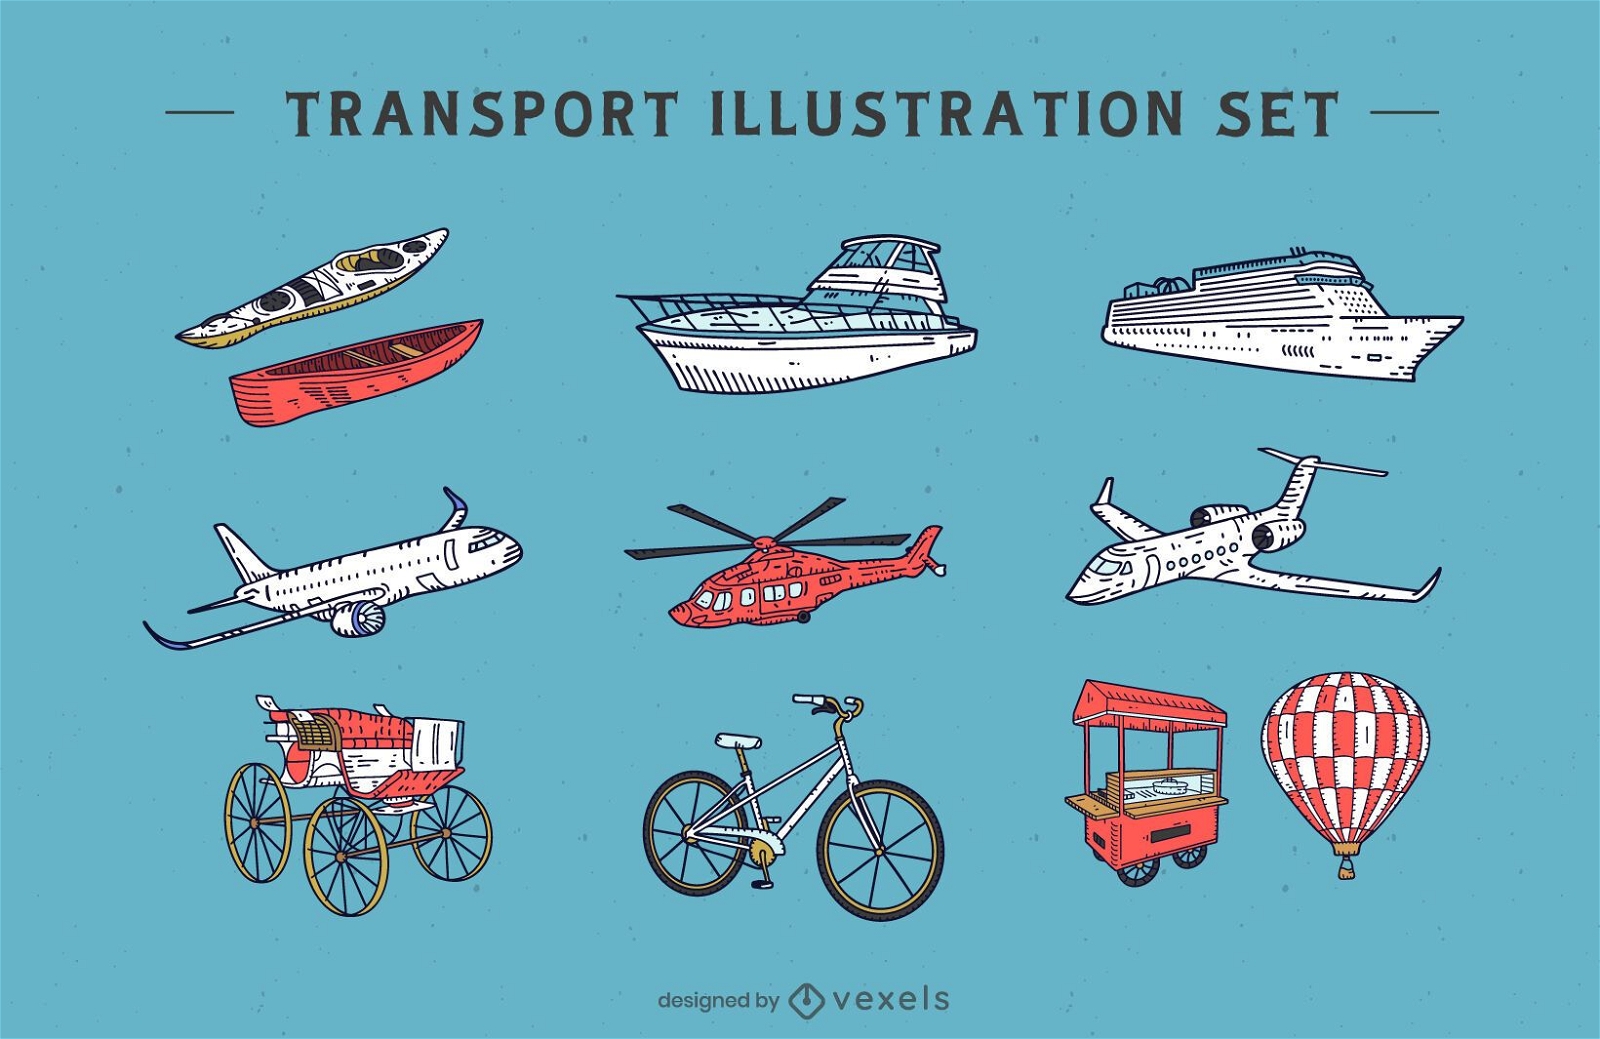 Transportation illustration set